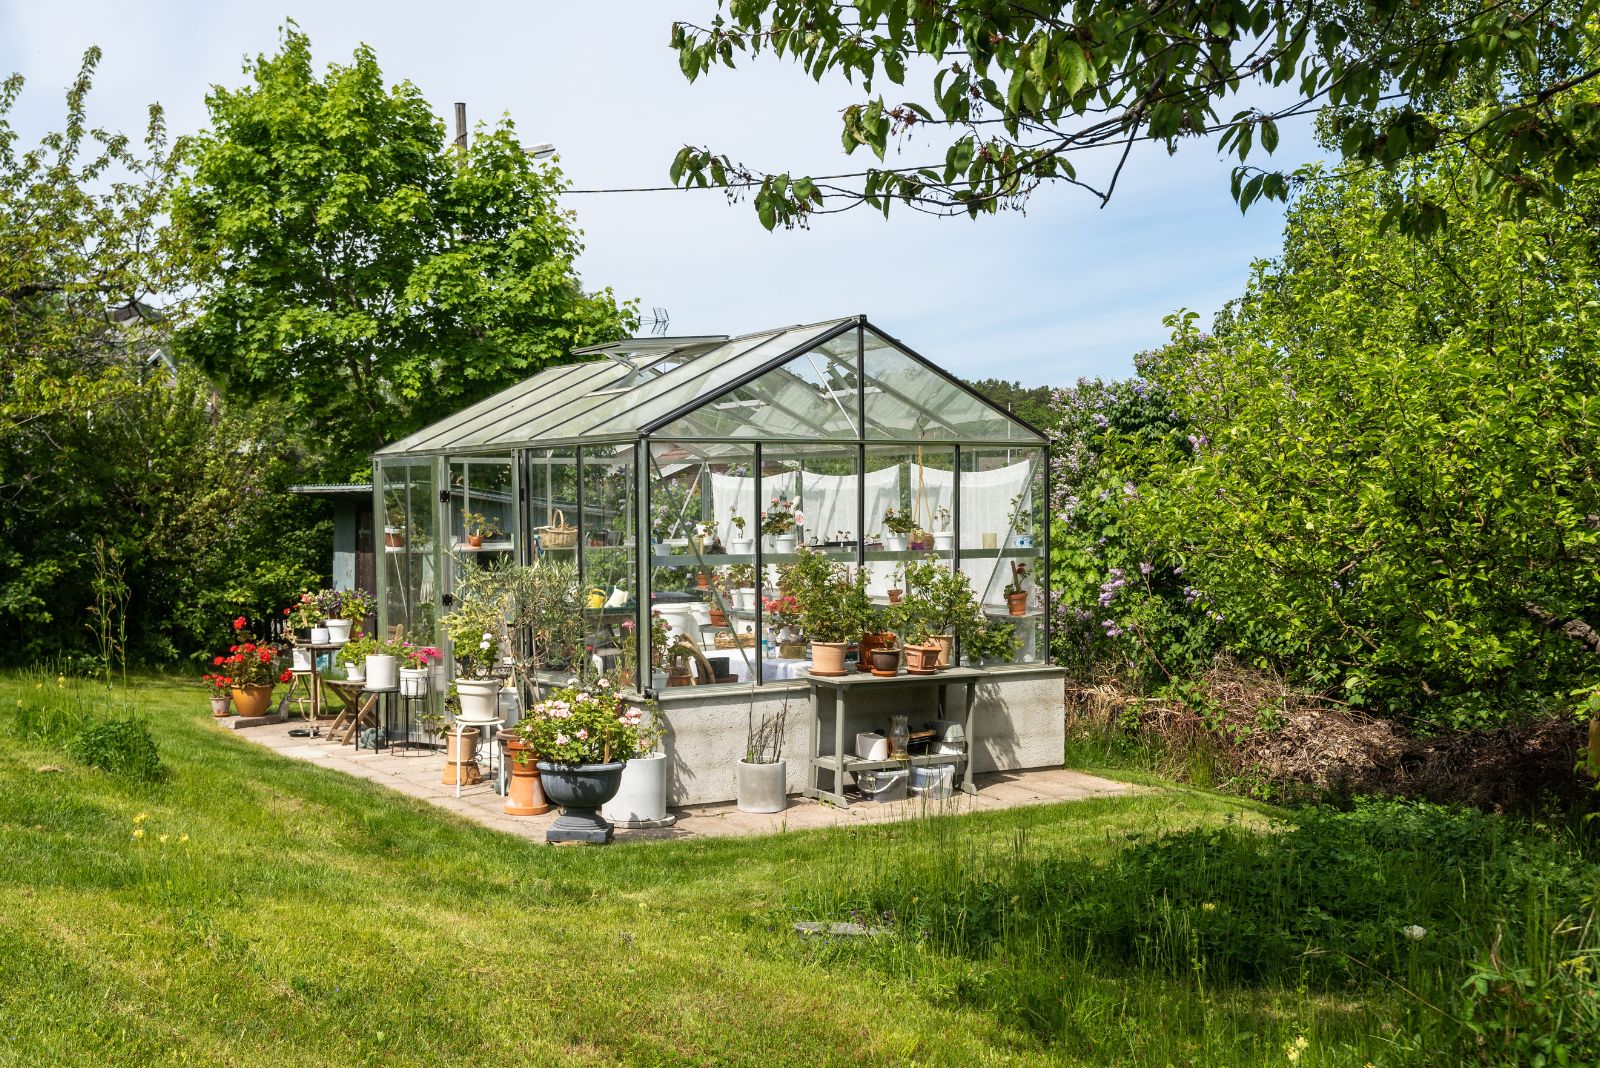 Beautiful greenhouse glass house in the garden yard near the villa